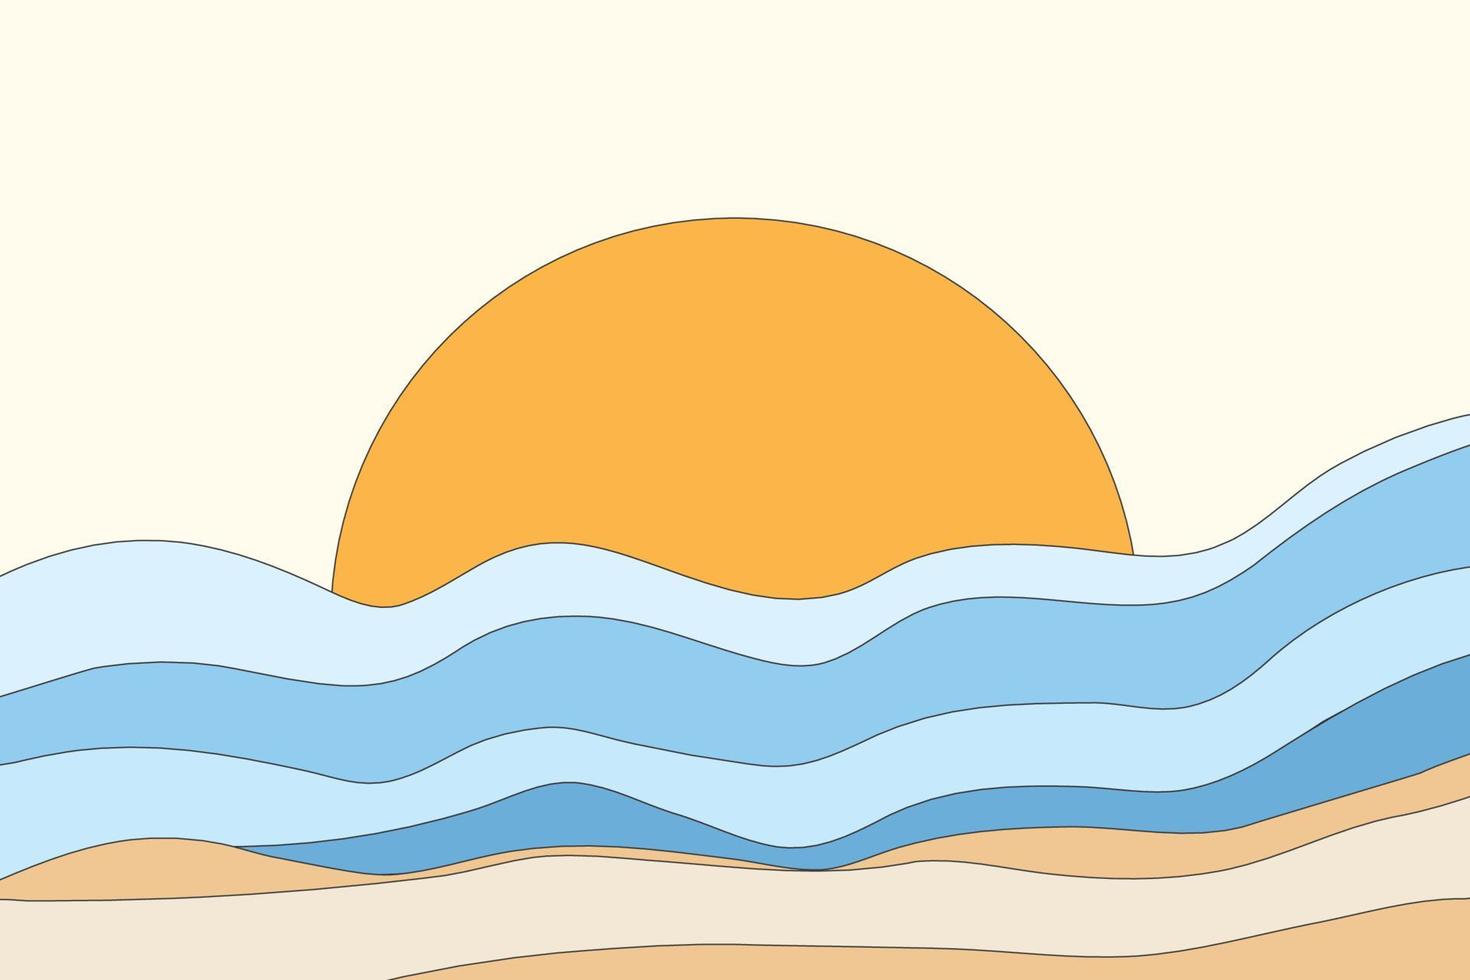 le paysage du fond de la structure des vagues de la mer. le cercle orange ressemble à un fond d'écran solaire dans un style abstrait vecteur